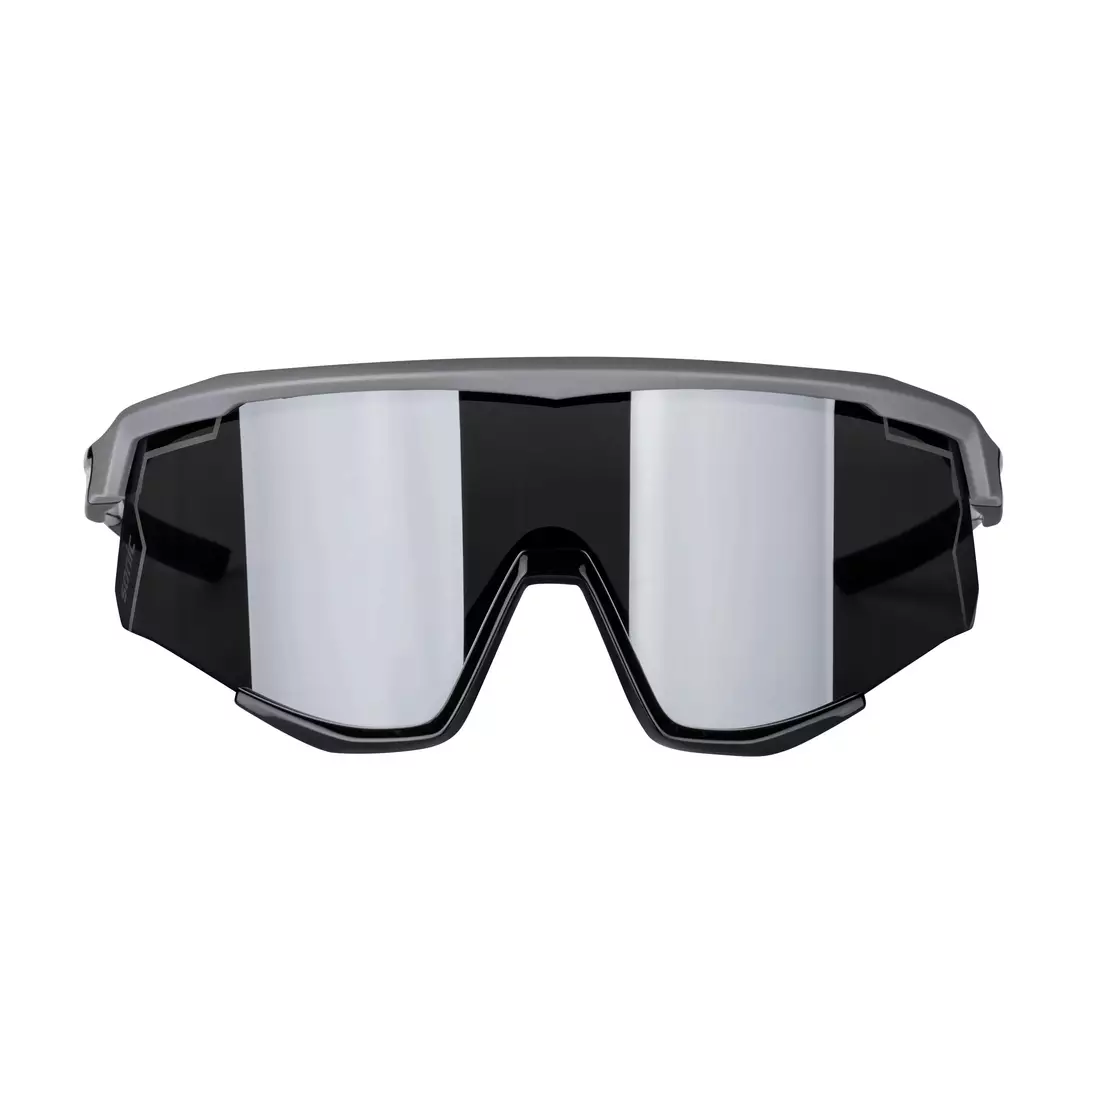 FORCE kerékpáros / sport szemüveg SONIC, szürke-fekete, 910953